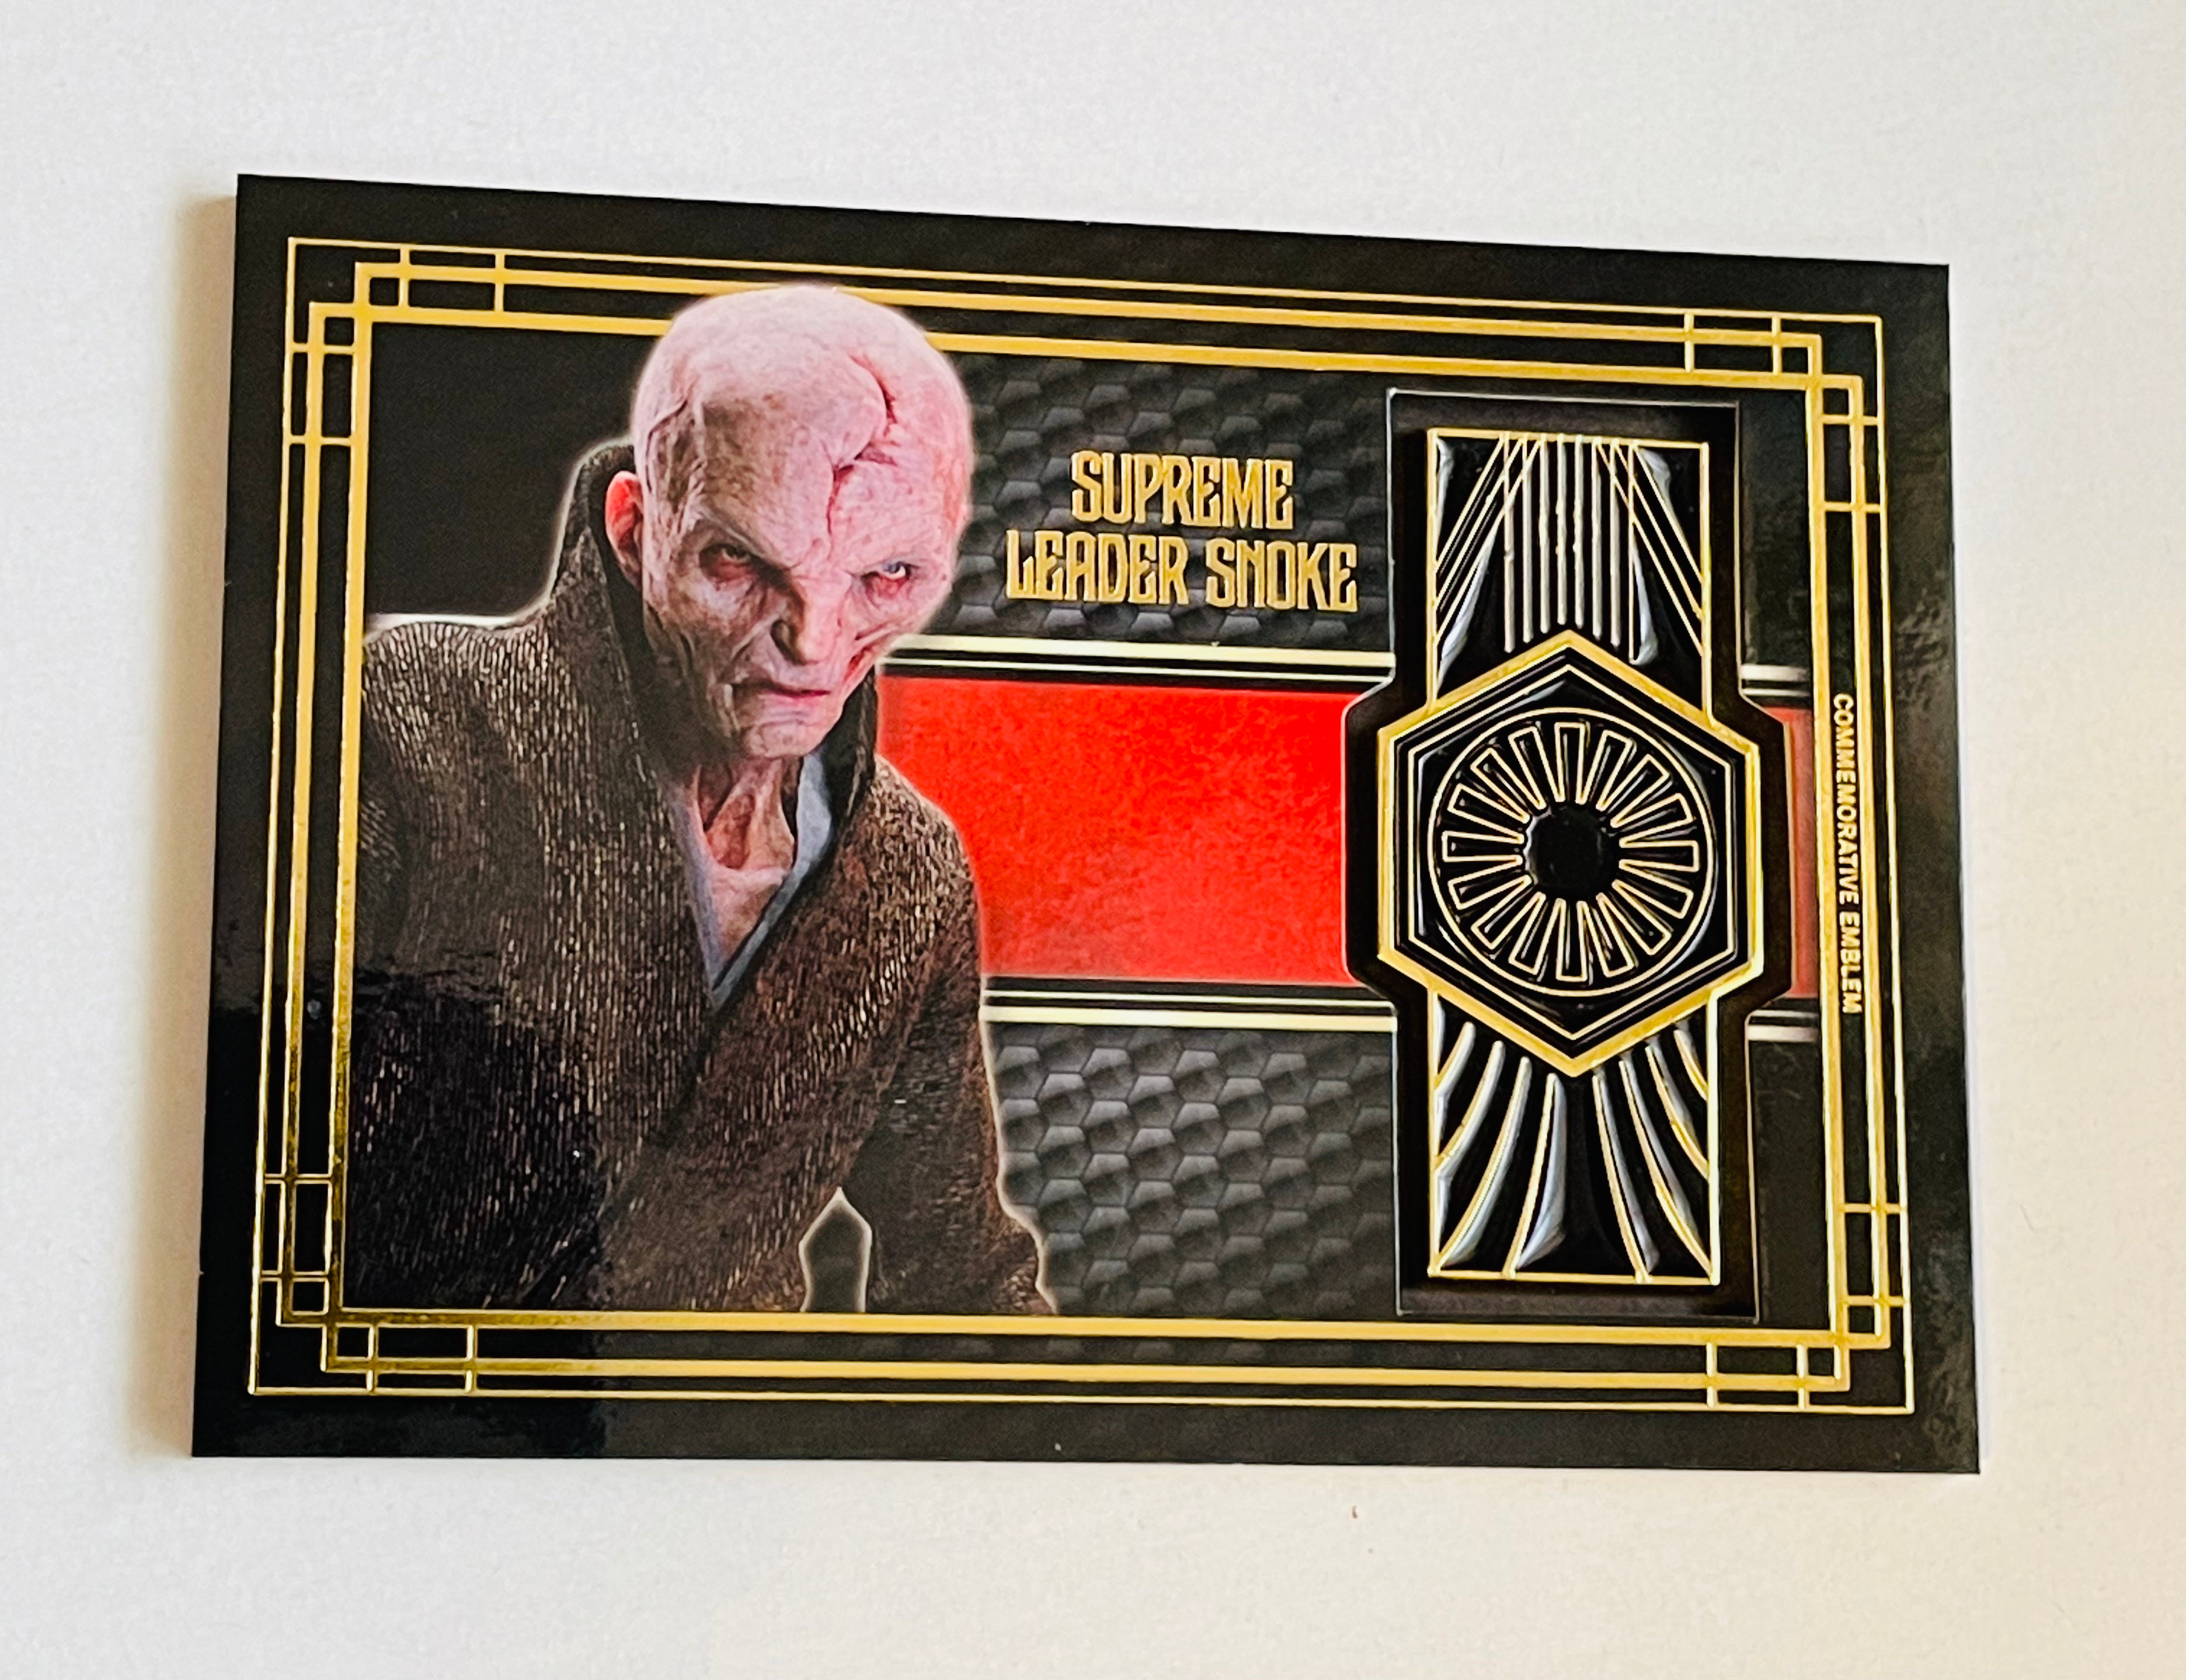 Star Wars Supreme Leader Snoke memorabilia insert card